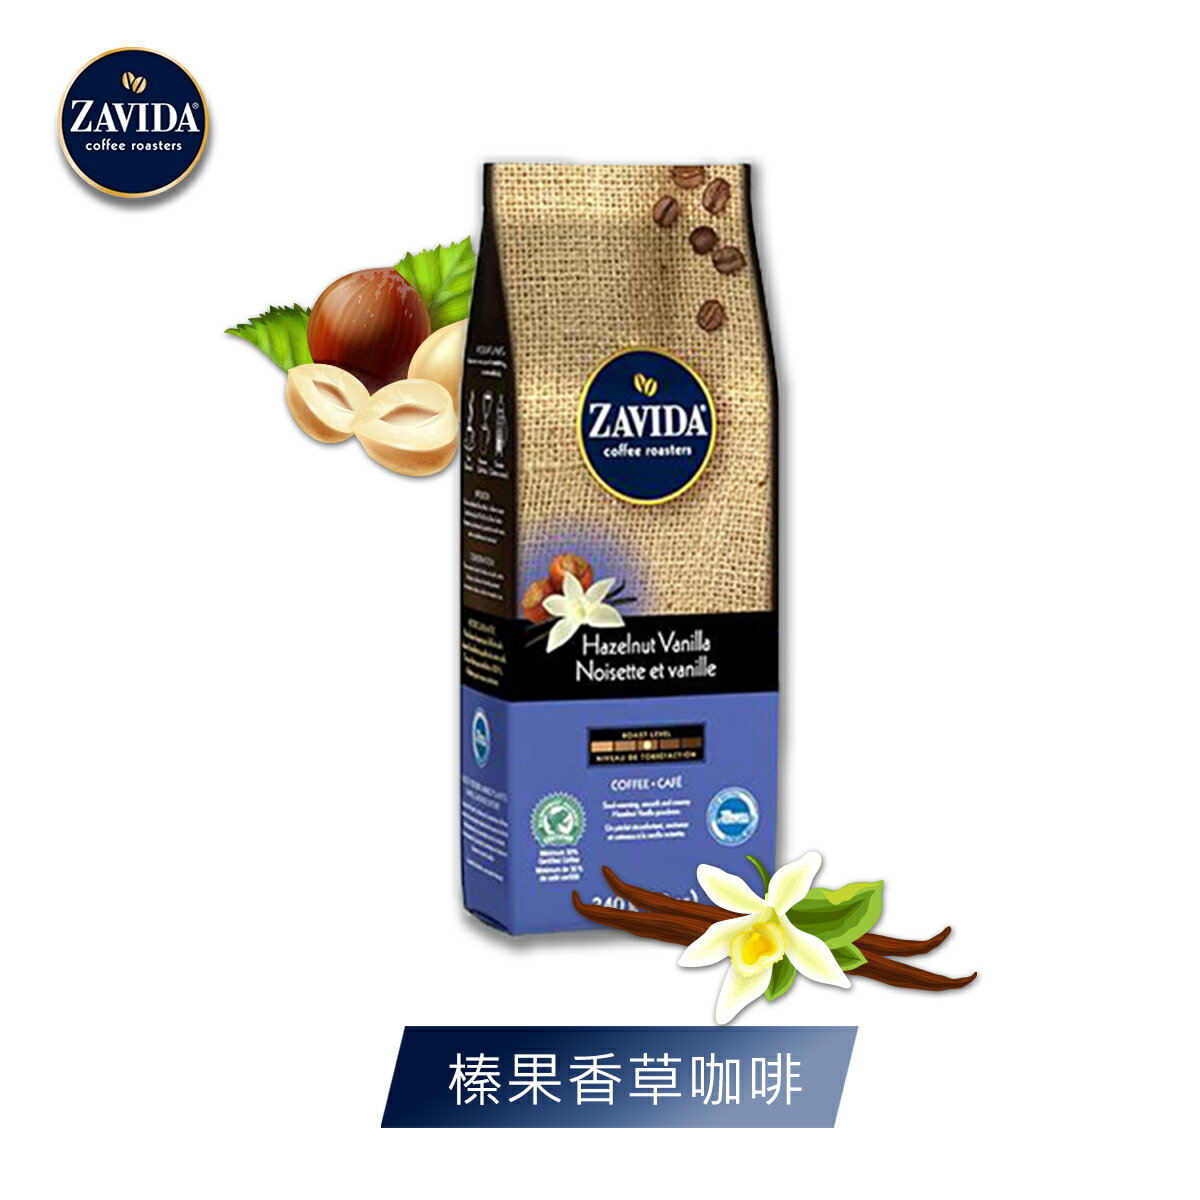 加拿大 ZAVIDA 雅菲達榛子香草咖啡豆(340克)【尋寶生活小舖】